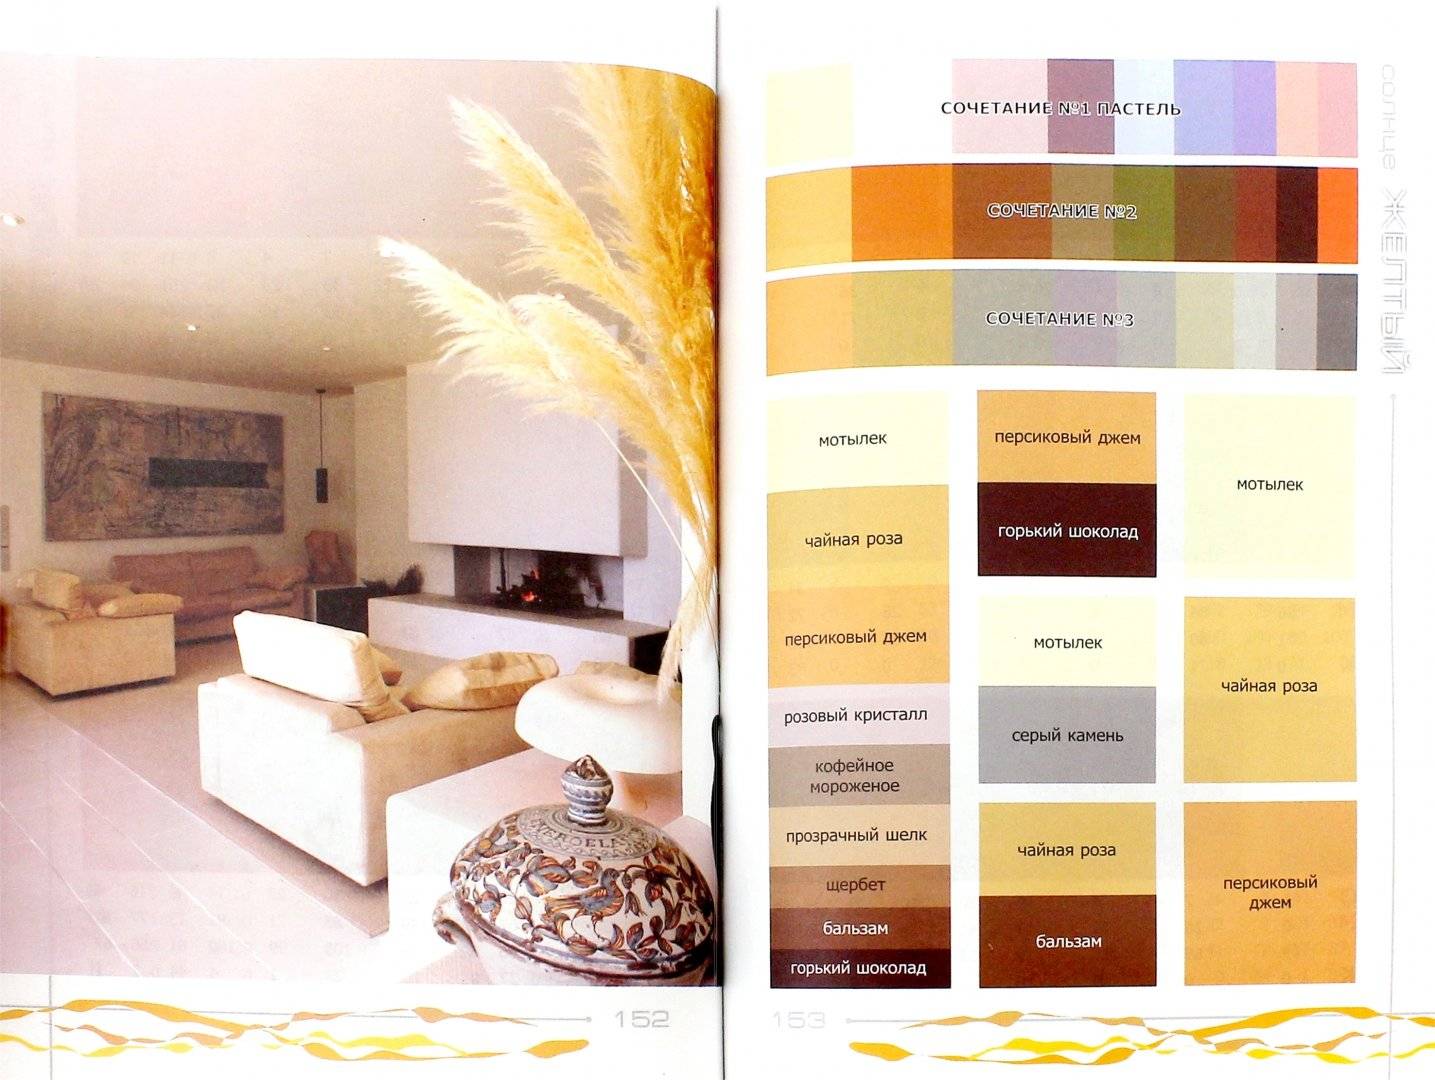 Как оформить пол, потолок, стены и мебель в одном стиле: сочетание цветов в интерьере (таблица, фото)